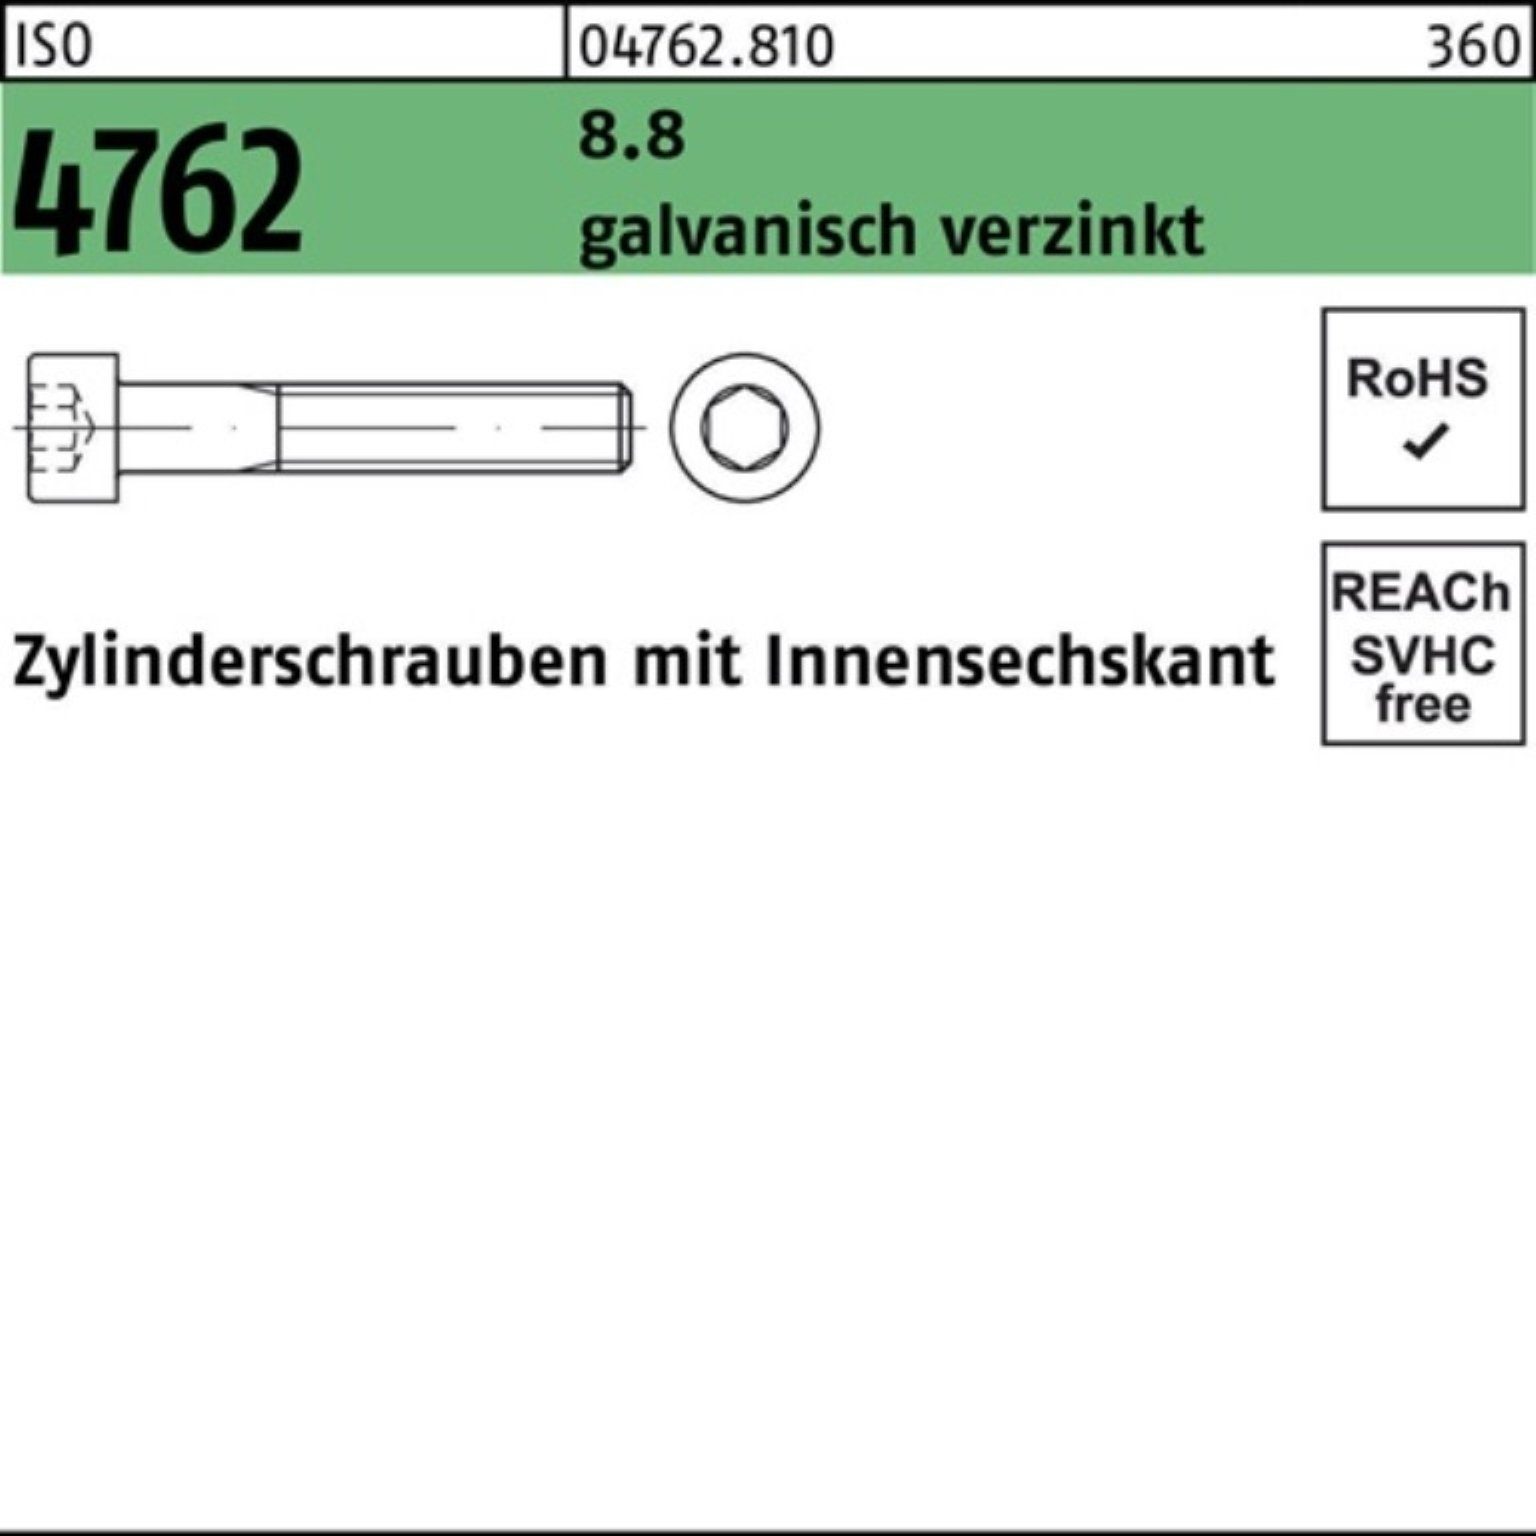 Reyher Zylinderschraube 100er Pack ISO galv.verz. Innen-6kt 8.8 4762 M20x140 Zylinderschraube